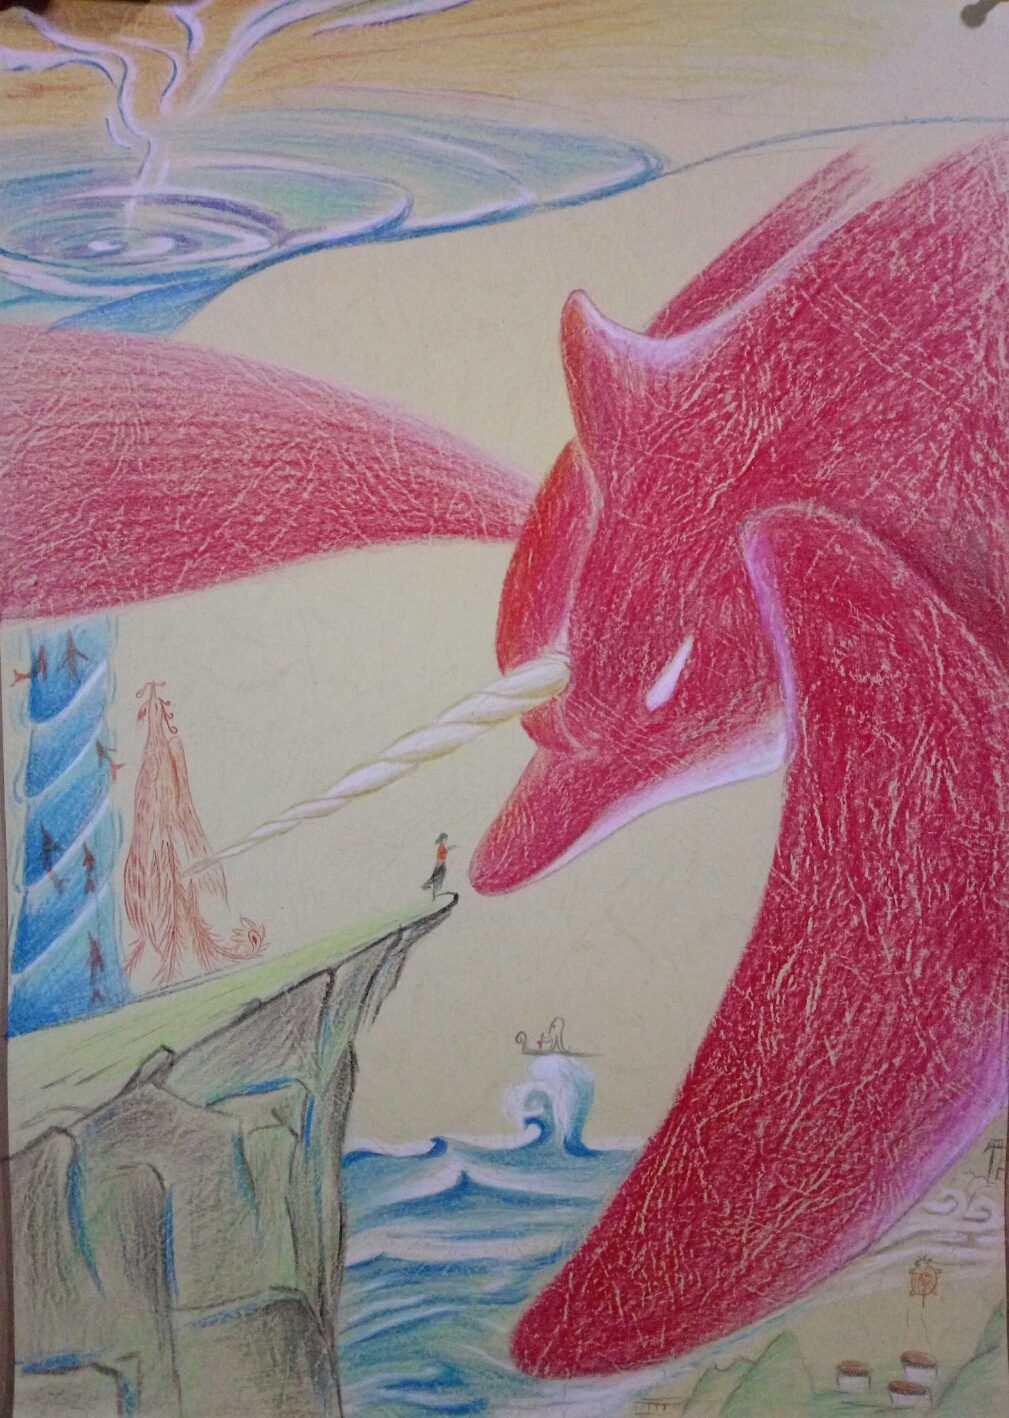 大鱼海棠手绘彩铅画图片